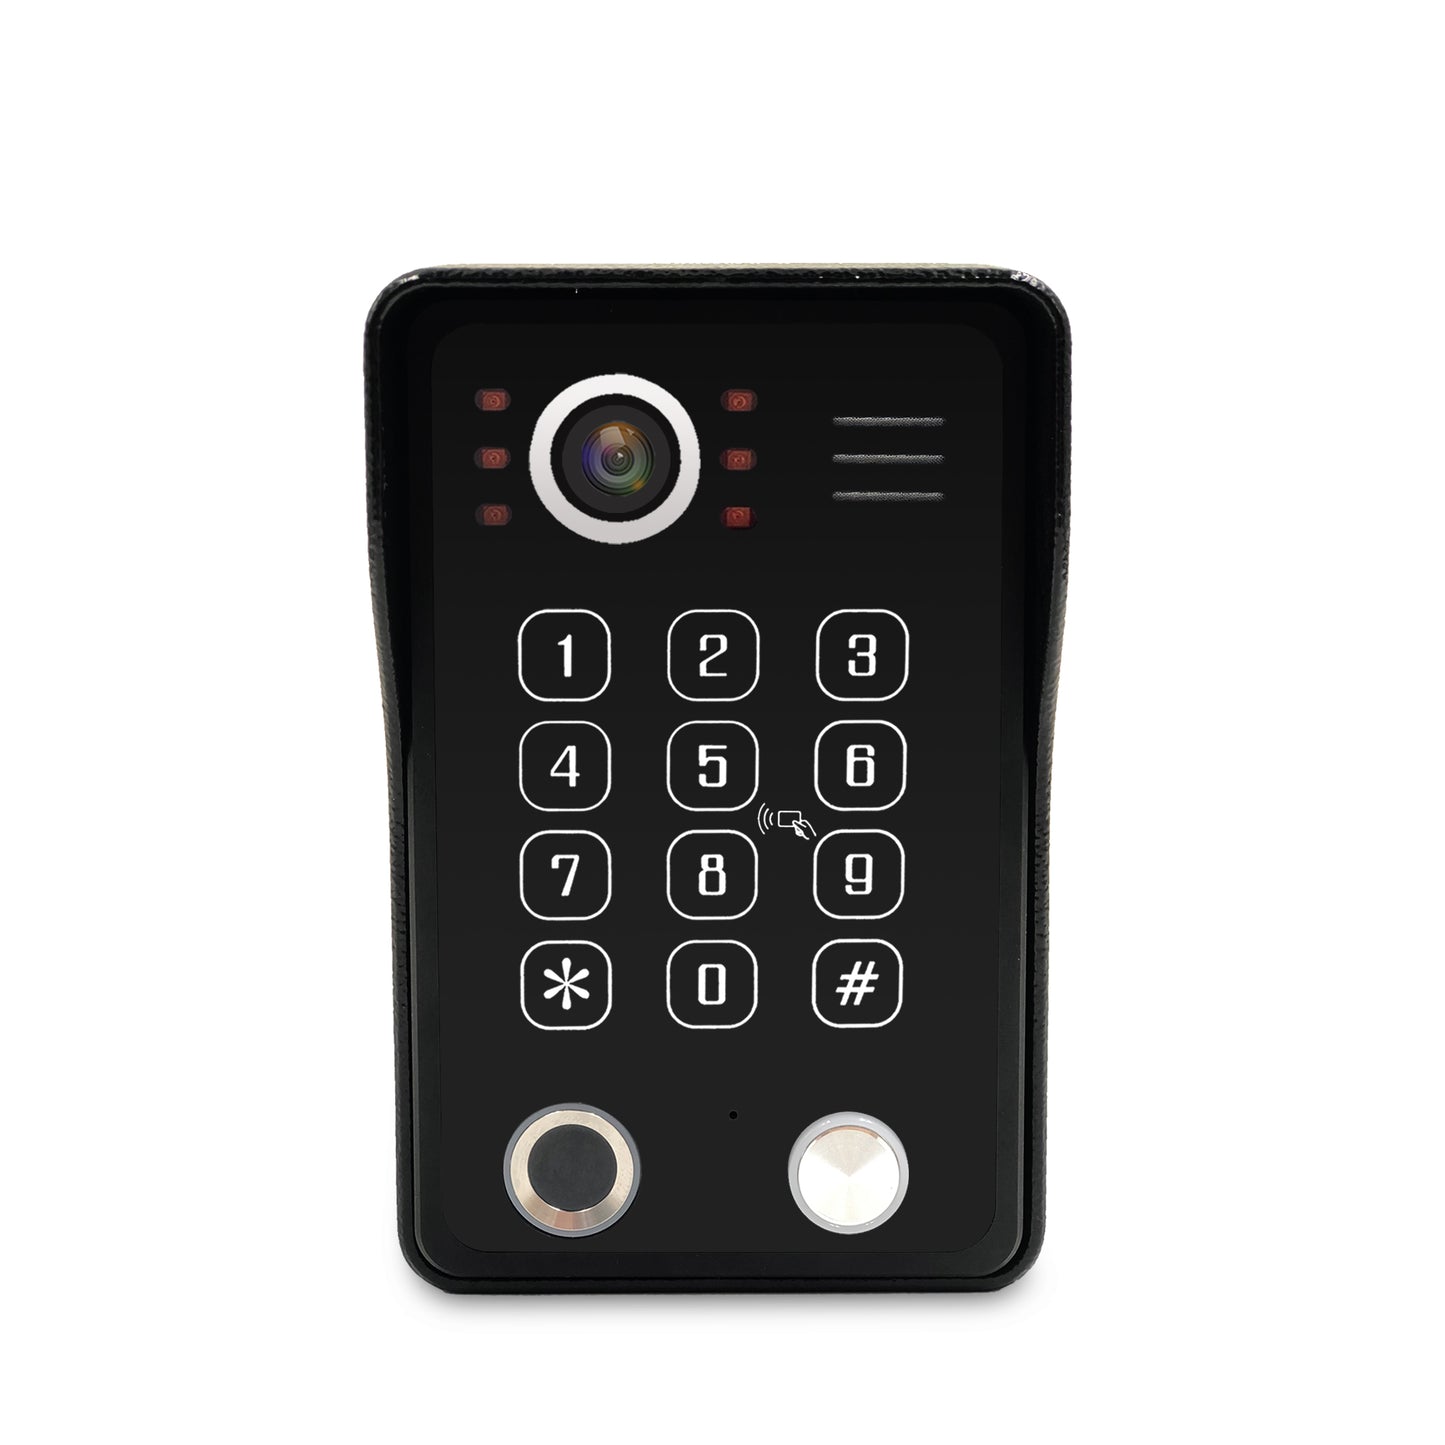 AnjieloSmart  Video DoorPhone DoorBell Waterproof Wide Angle Lens with RFID Card Passcode and fingerprint unlock